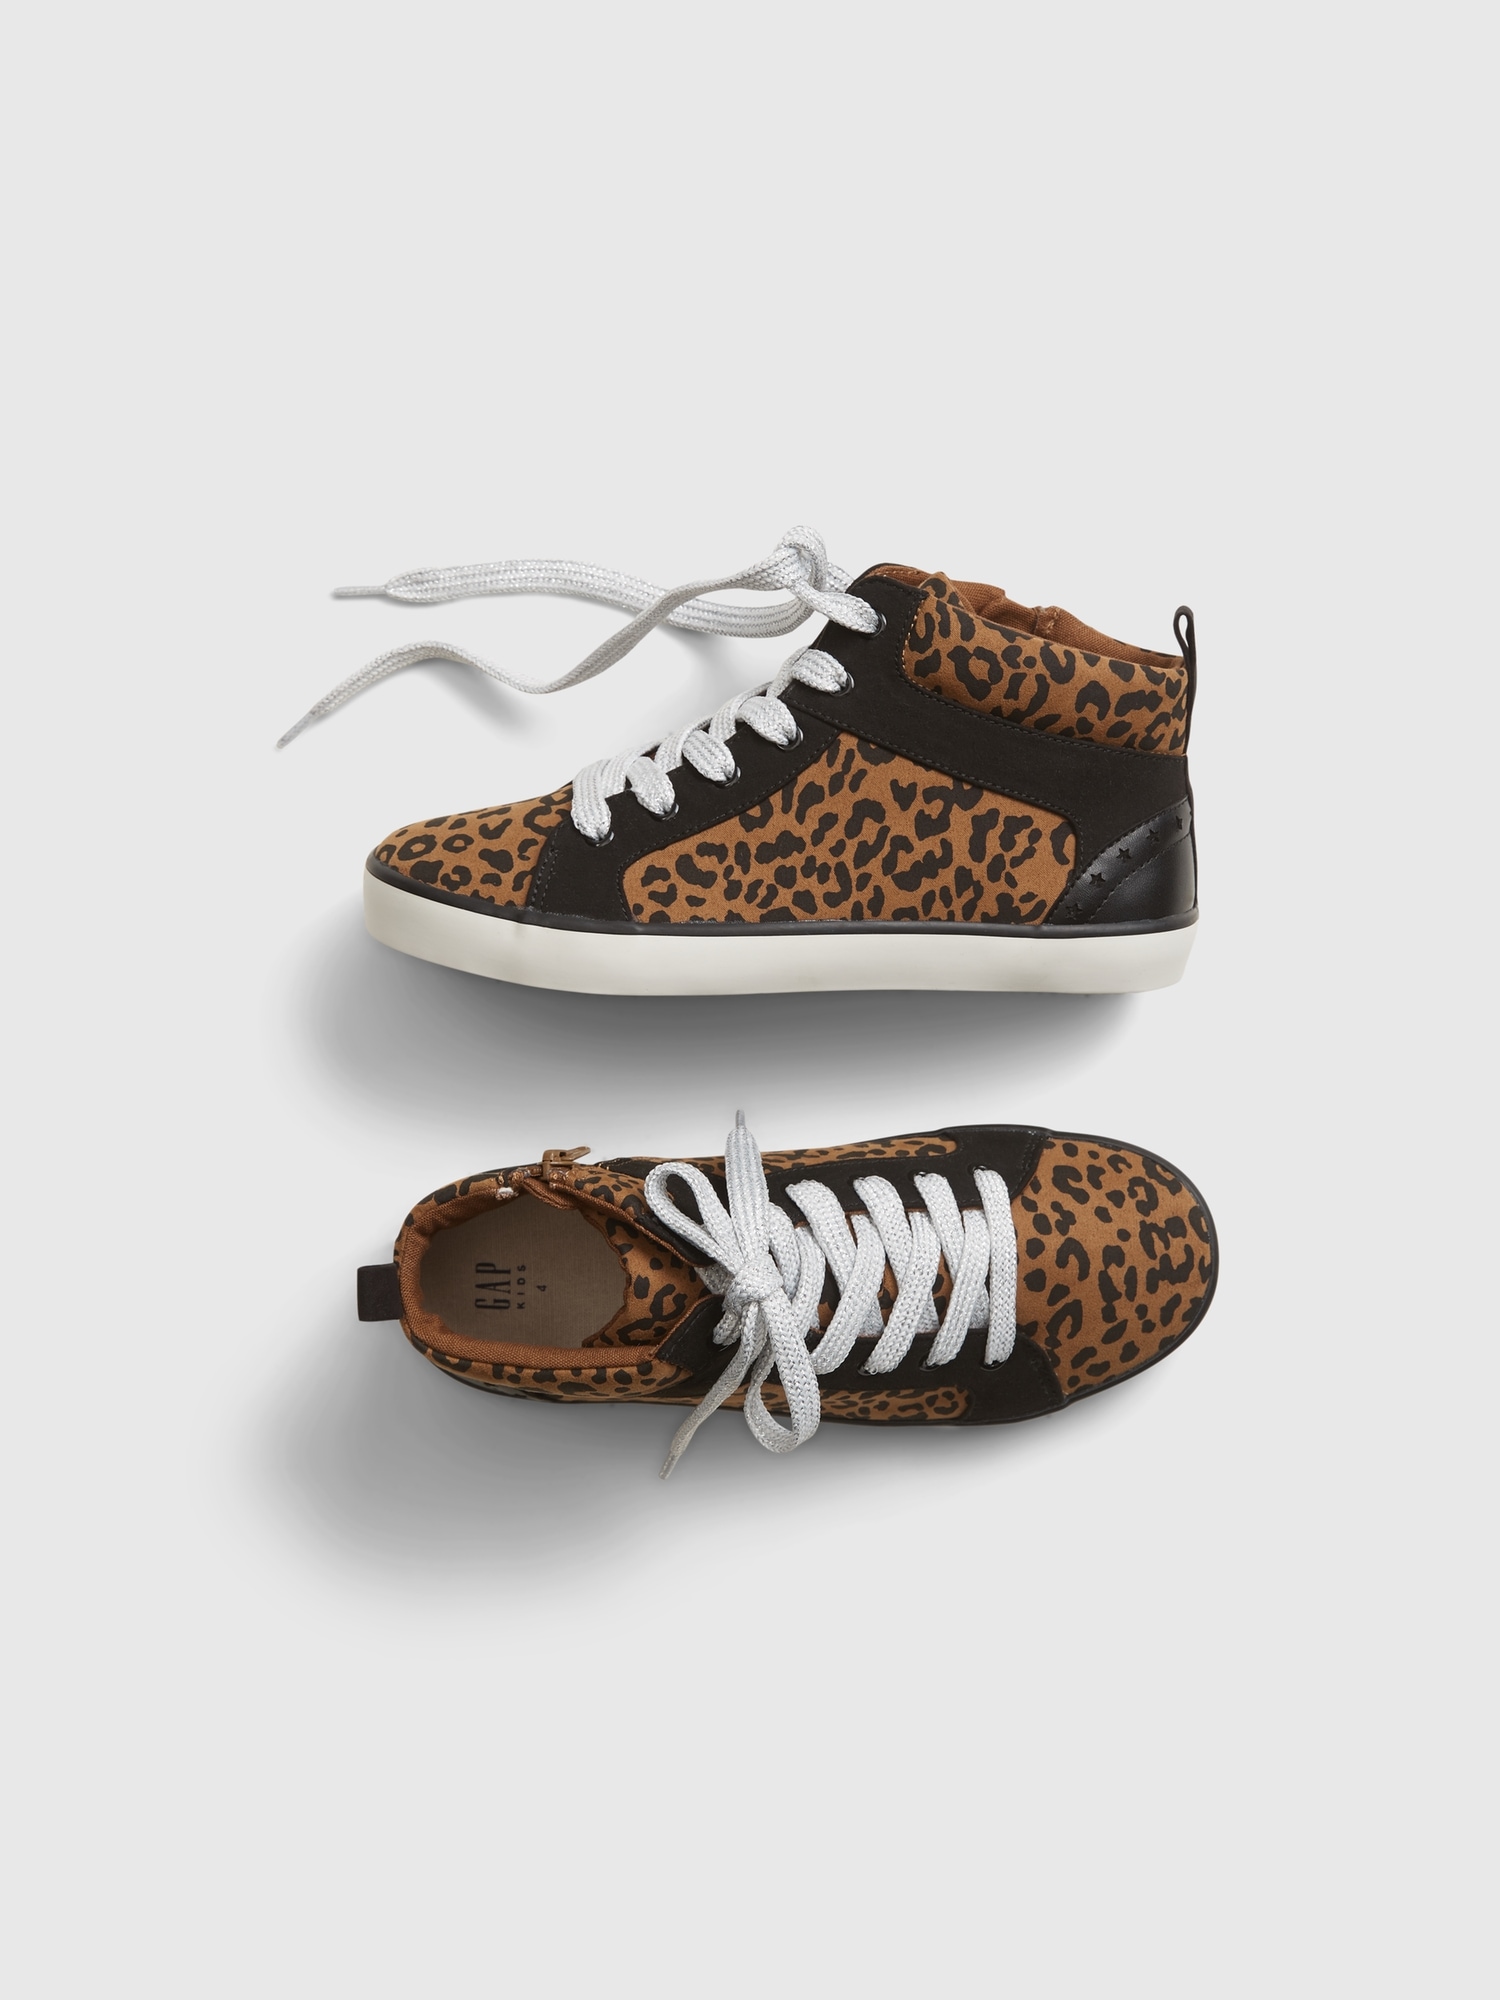 gap leopard shoes